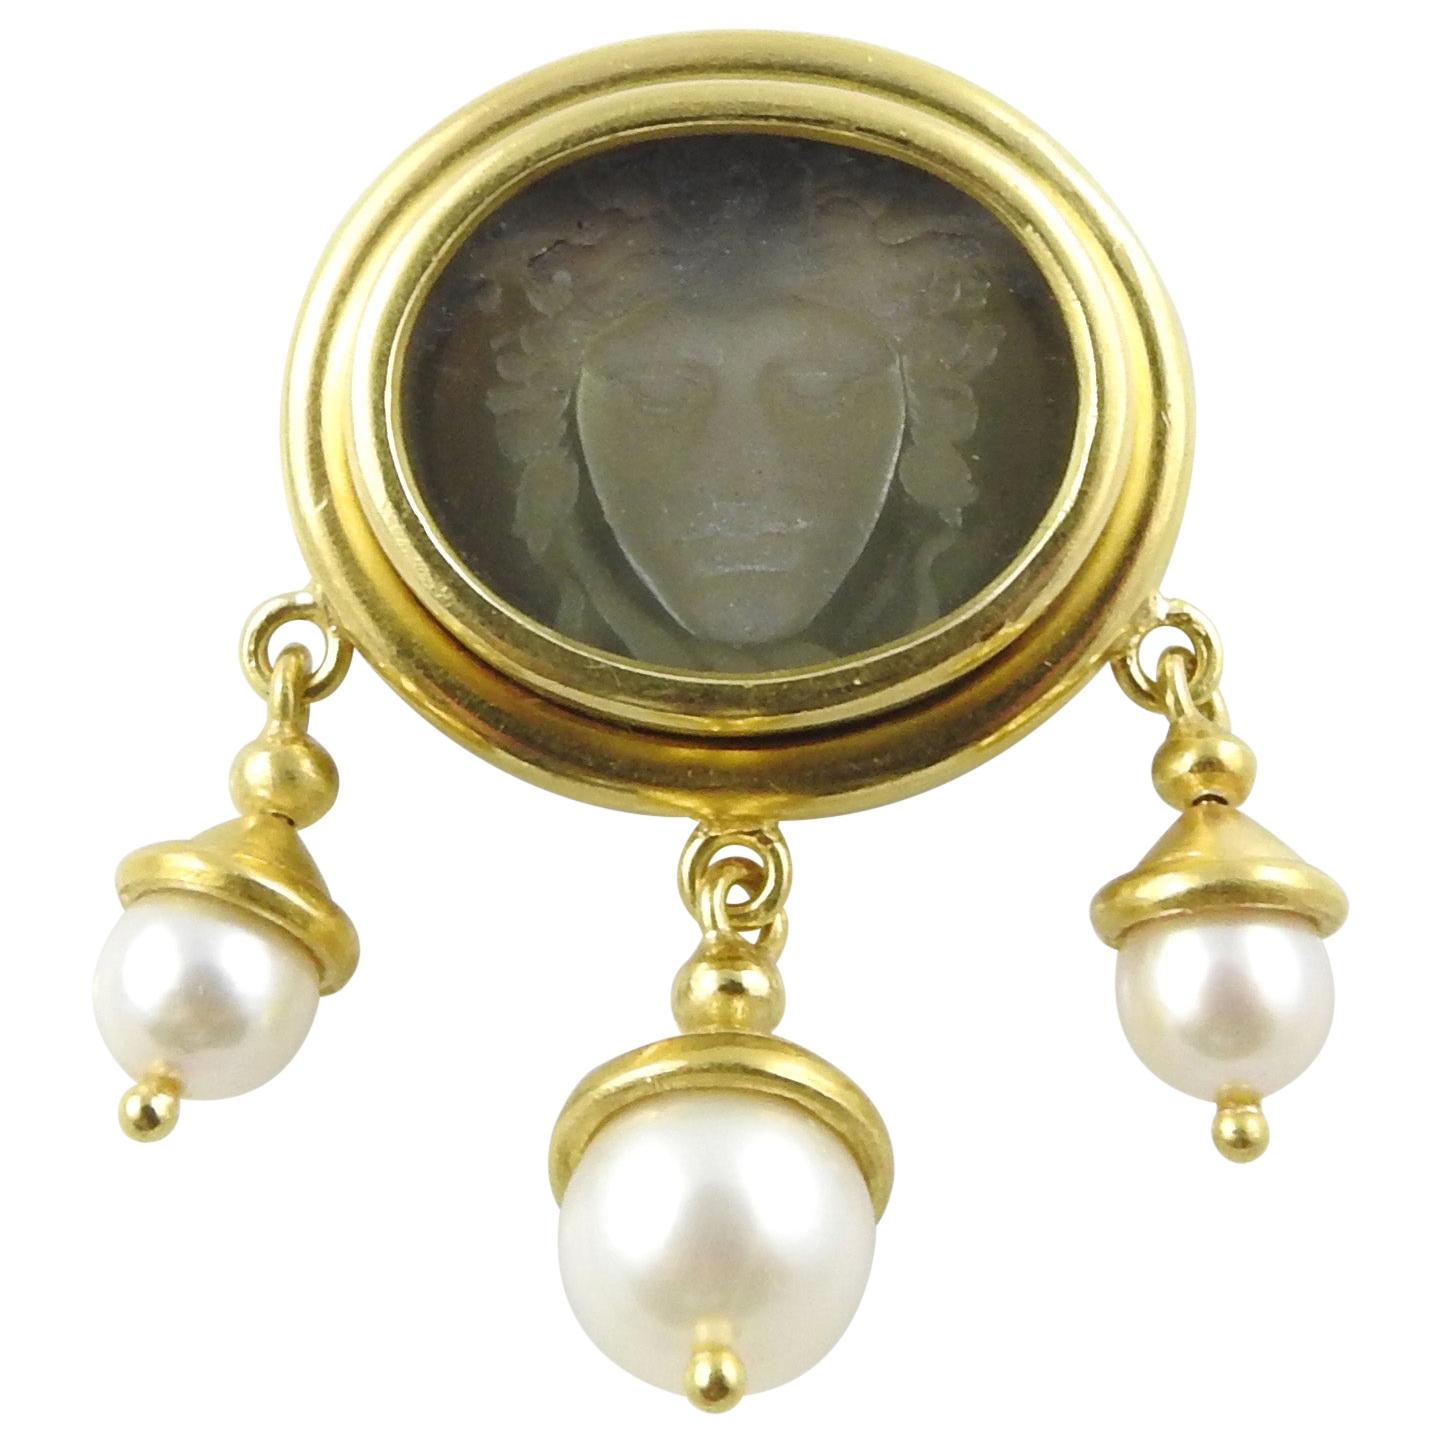 Elizabeth Locke 18 Karat Gold Venetian Glass Pearl Intaglio Brooch Pendant